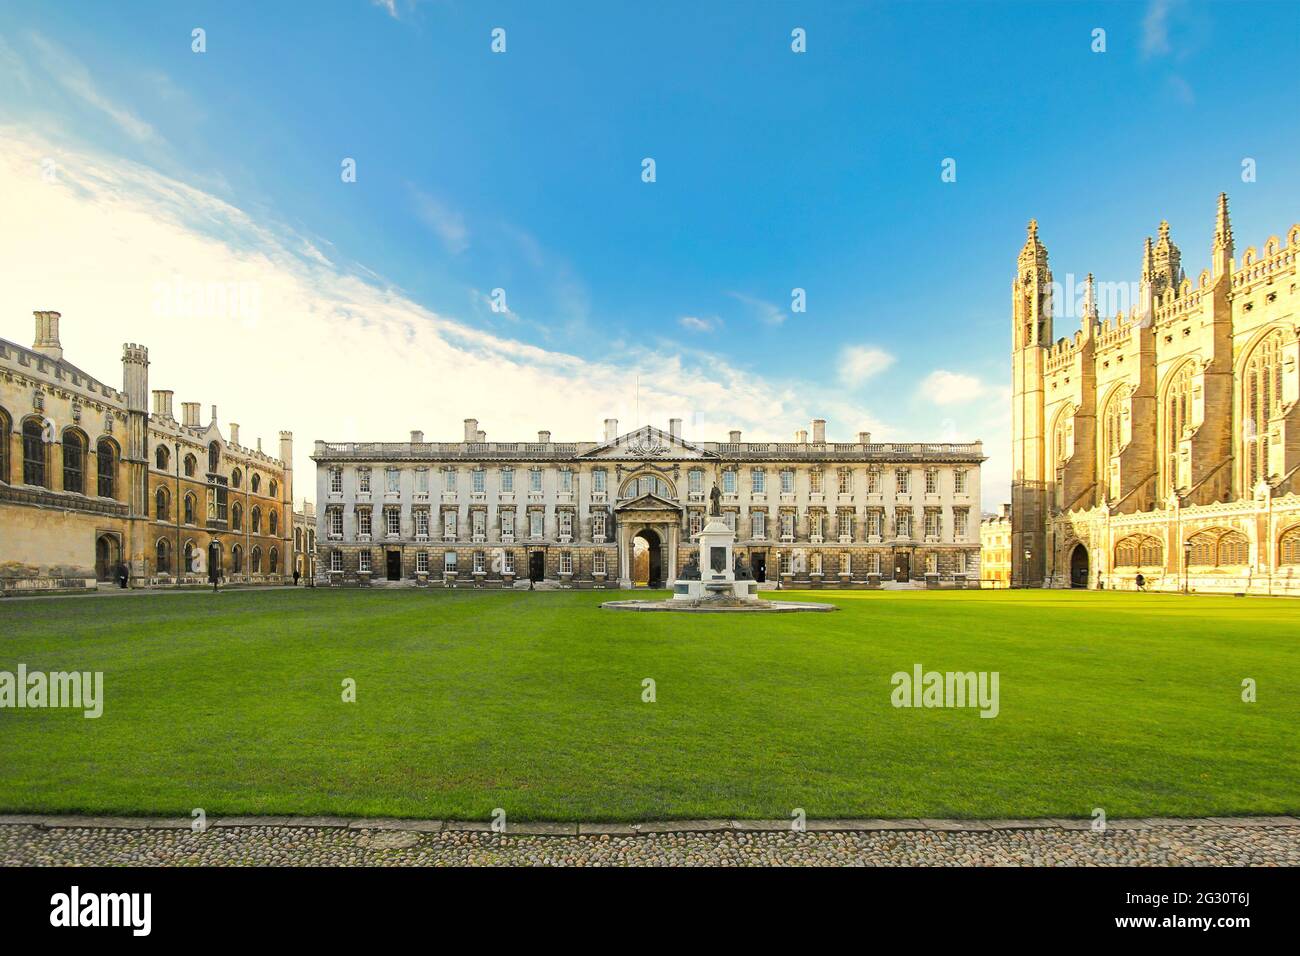 Vue sur une belle architecture du King's College de l'Université de Cambridge en Angleterre. Prise à Cambridge, Royaume-Uni, le 6 décembre 2011 Banque D'Images